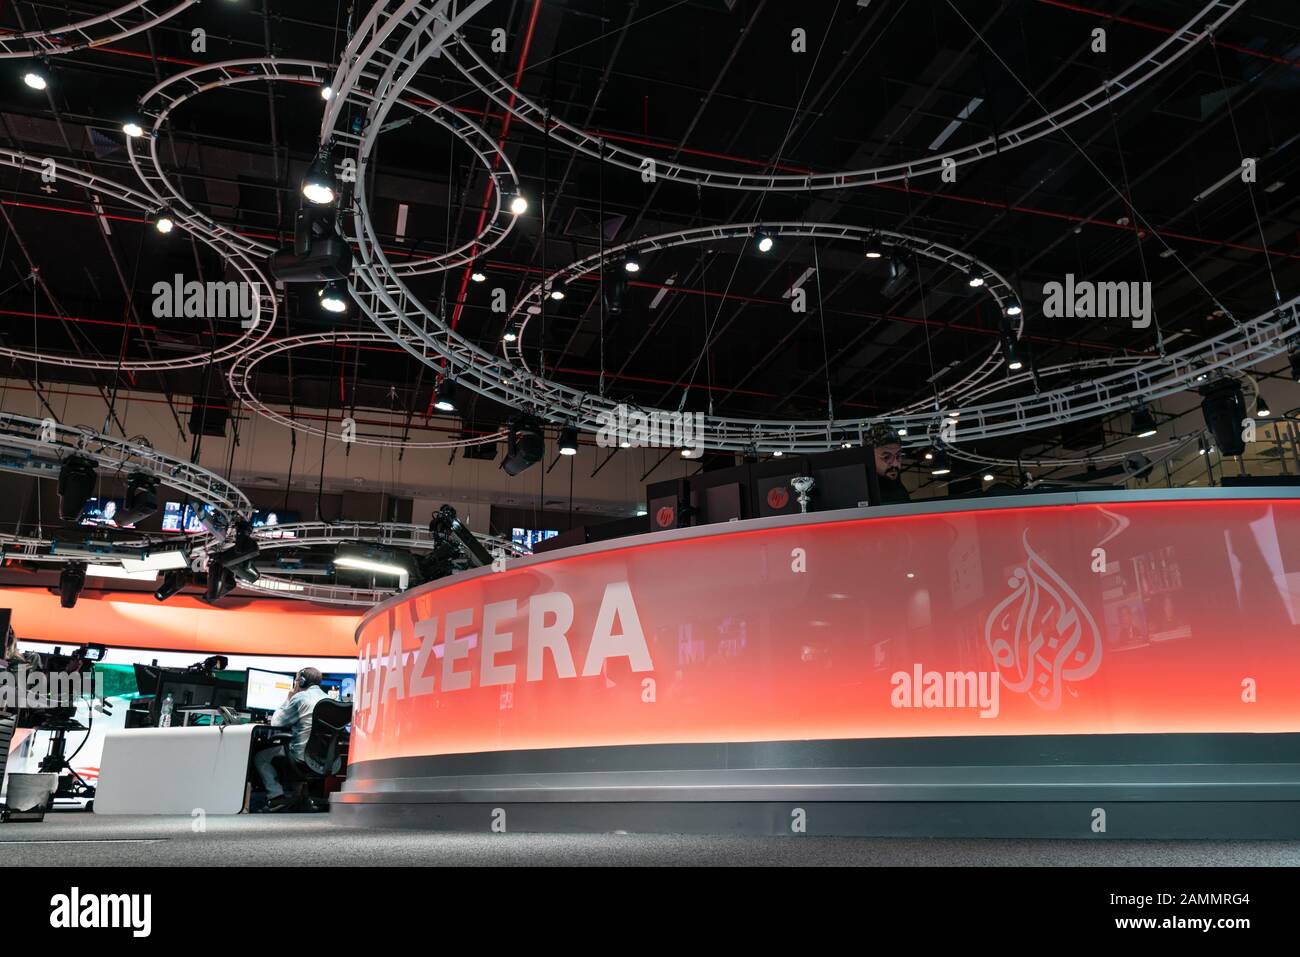 Die nachrichtenredaktion von Al Jazeera English TV Channel, Doha, Qatar Stockfoto